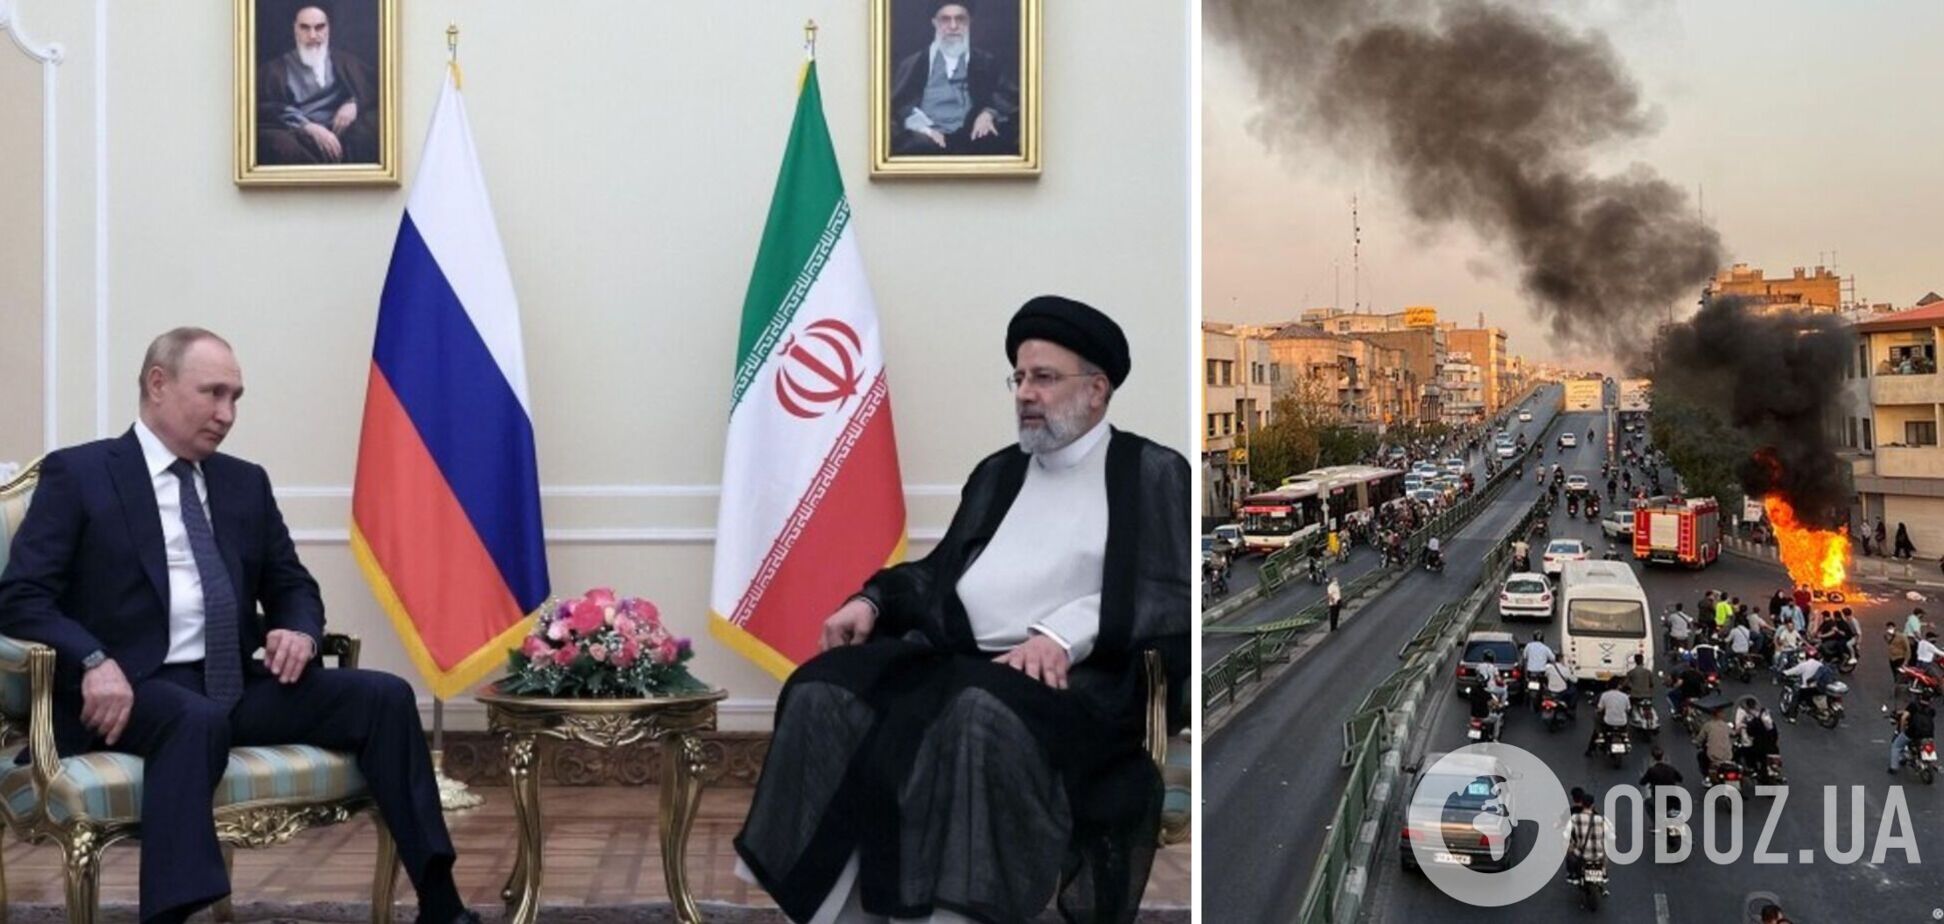 Иран обратился к России за помощью для подавления народных протестов – СМИ